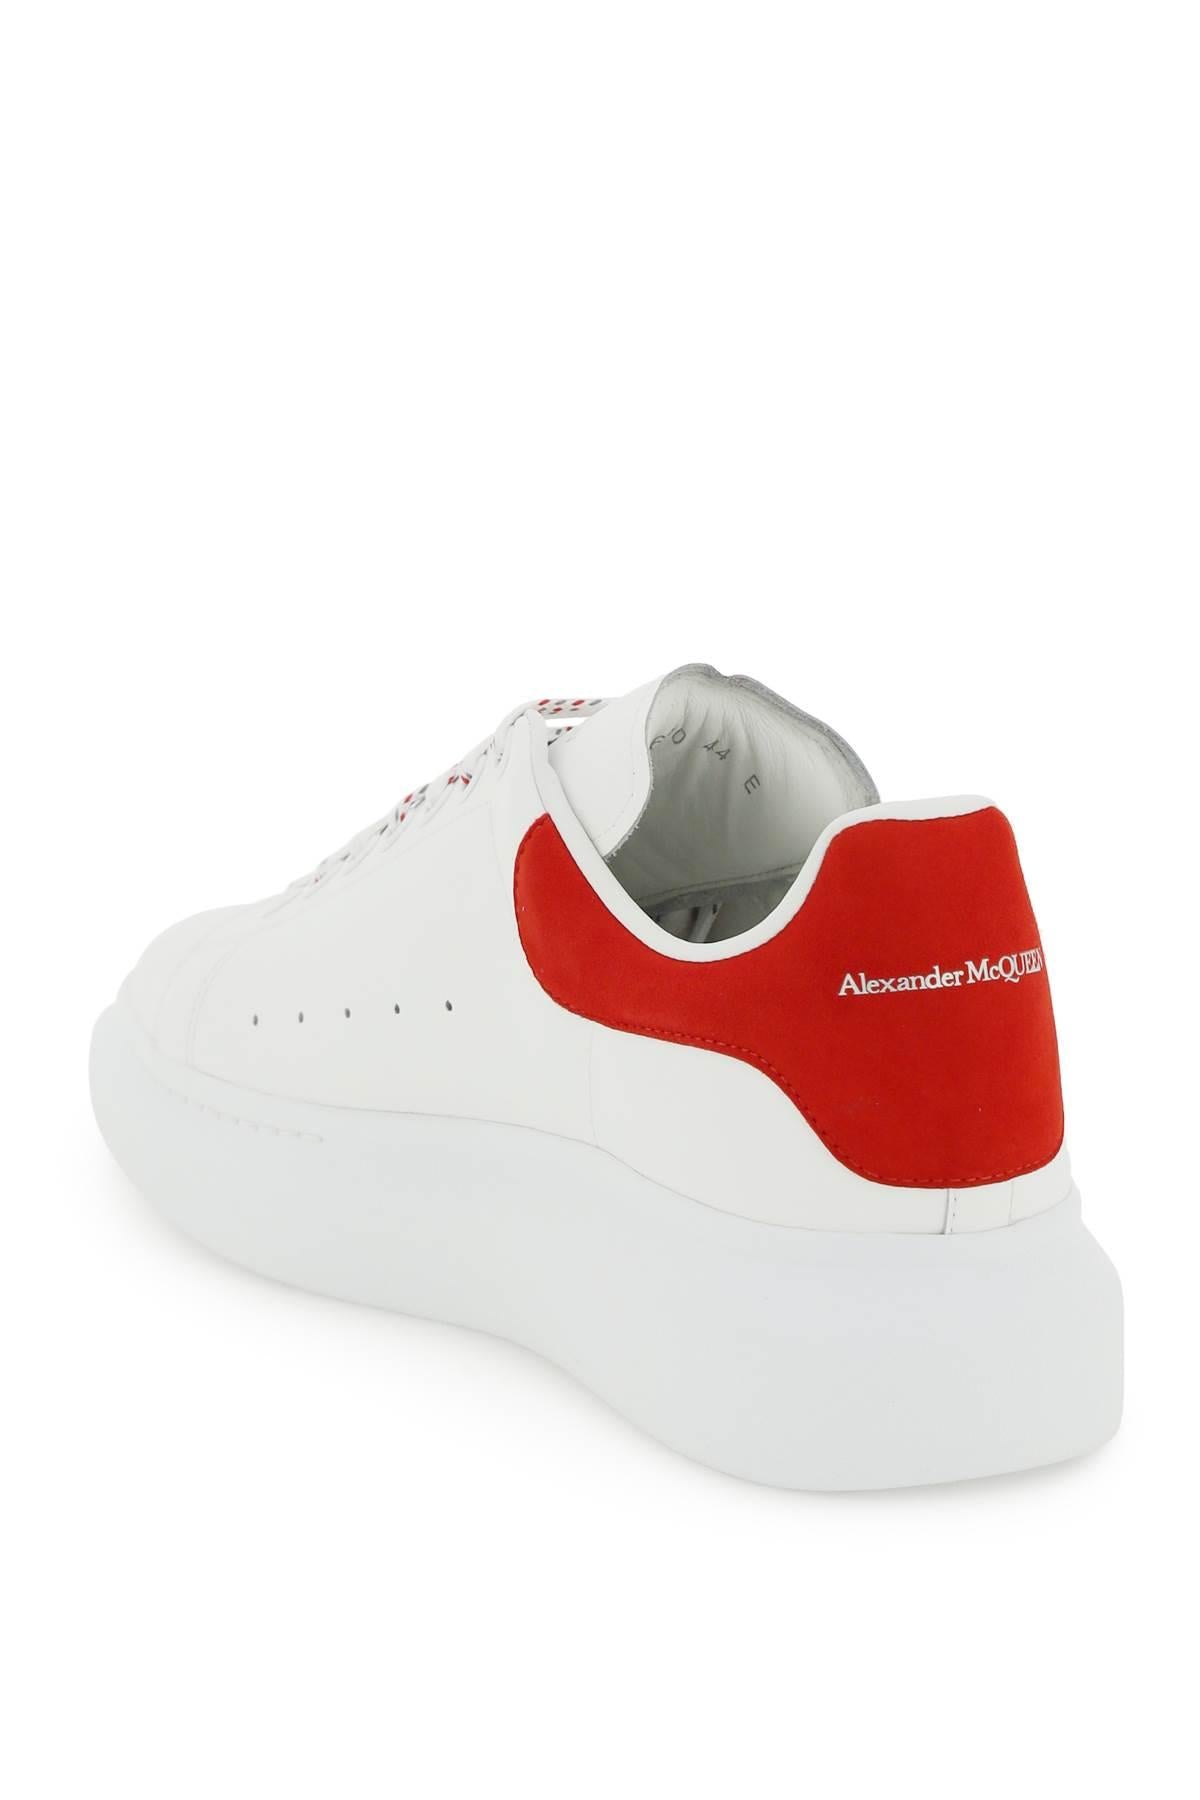 ALEXANDER MCQUEEN: sneakers for man - Red  Alexander Mcqueen sneakers  553680WHGP7 online at